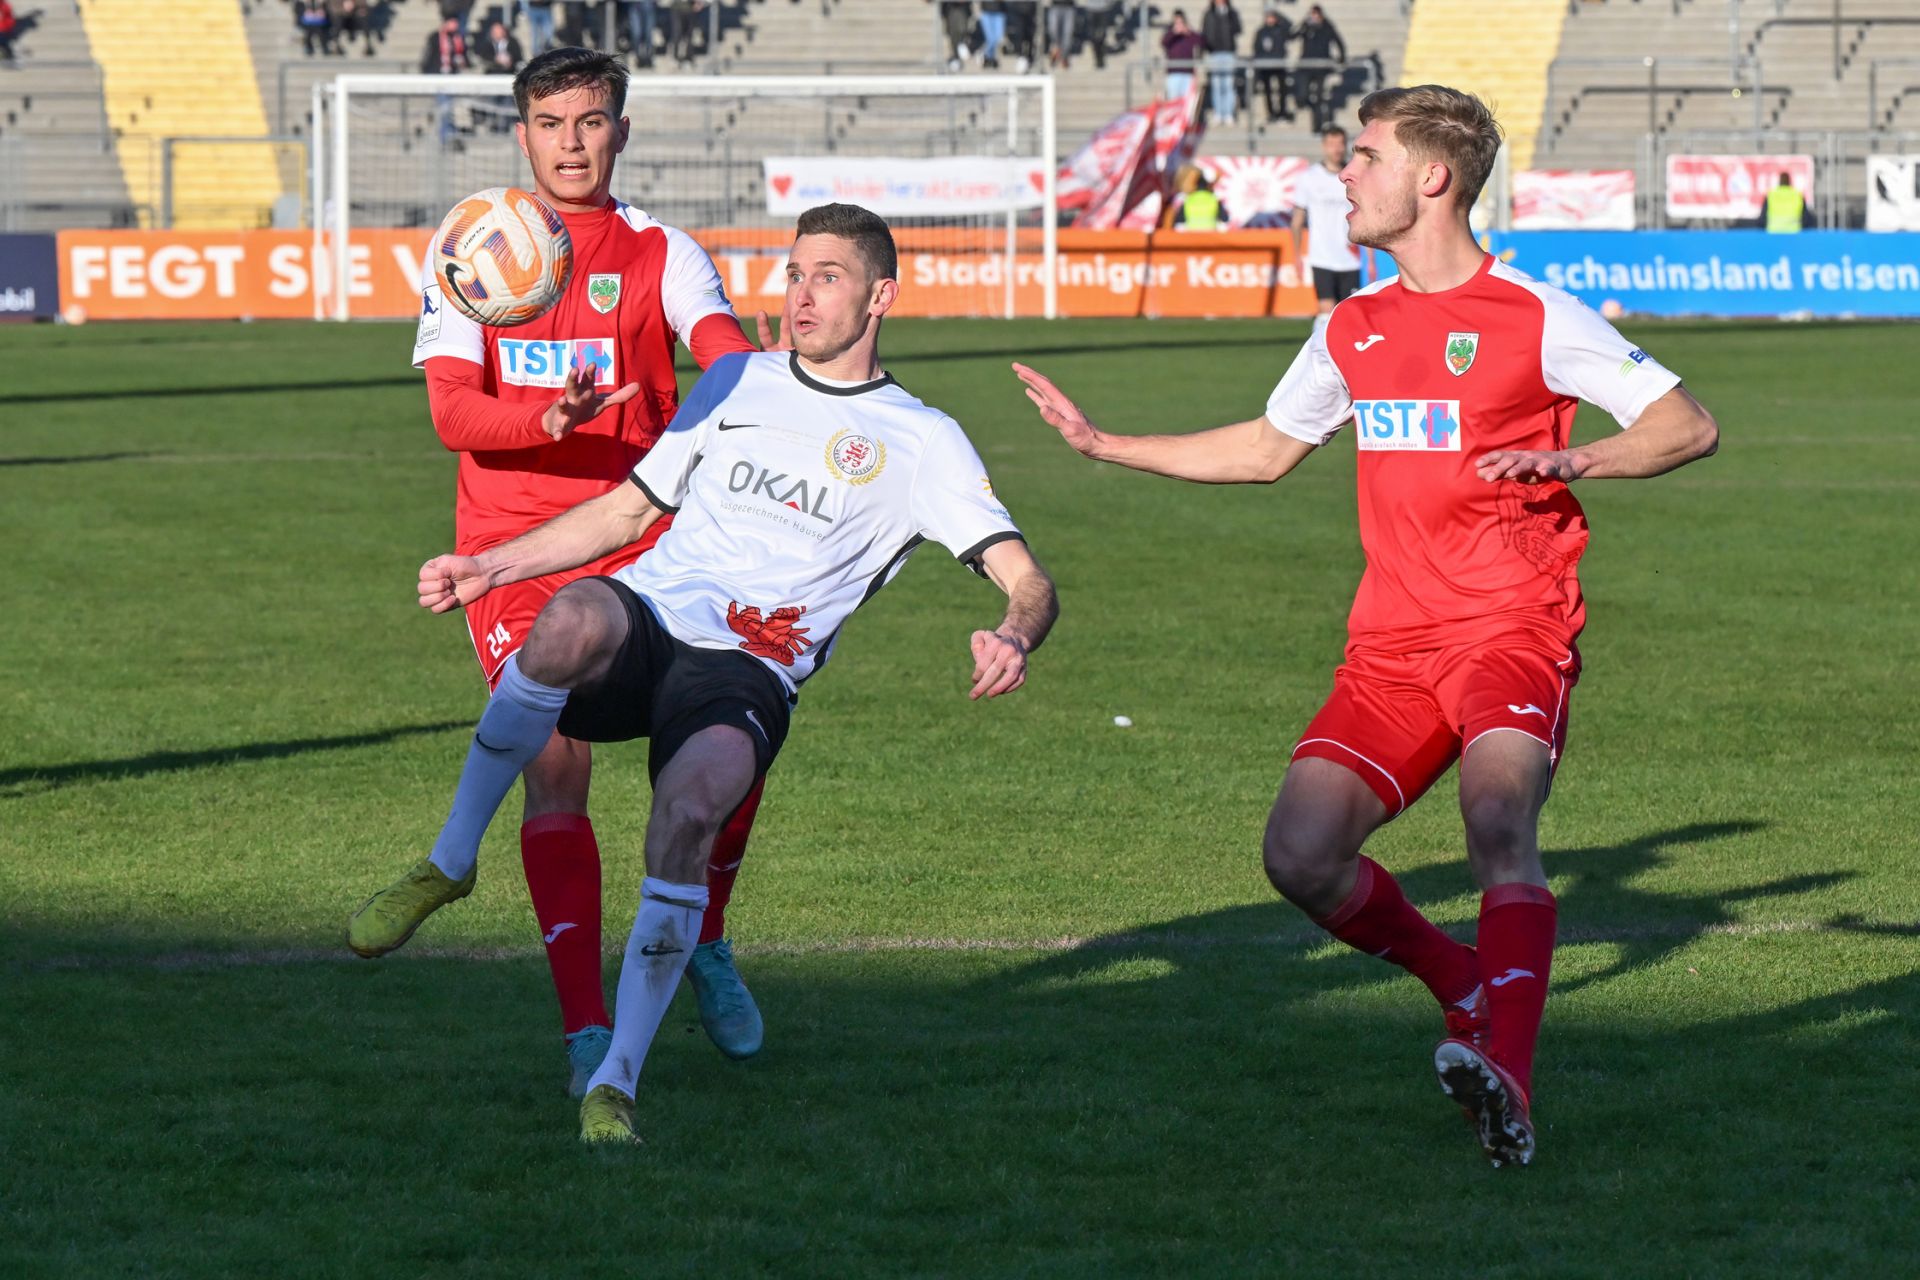 Saison 2022/23, Spieltag 2, KSV Hessen Kassel, Wormatia Worms, Endstand 1:1: Iksal